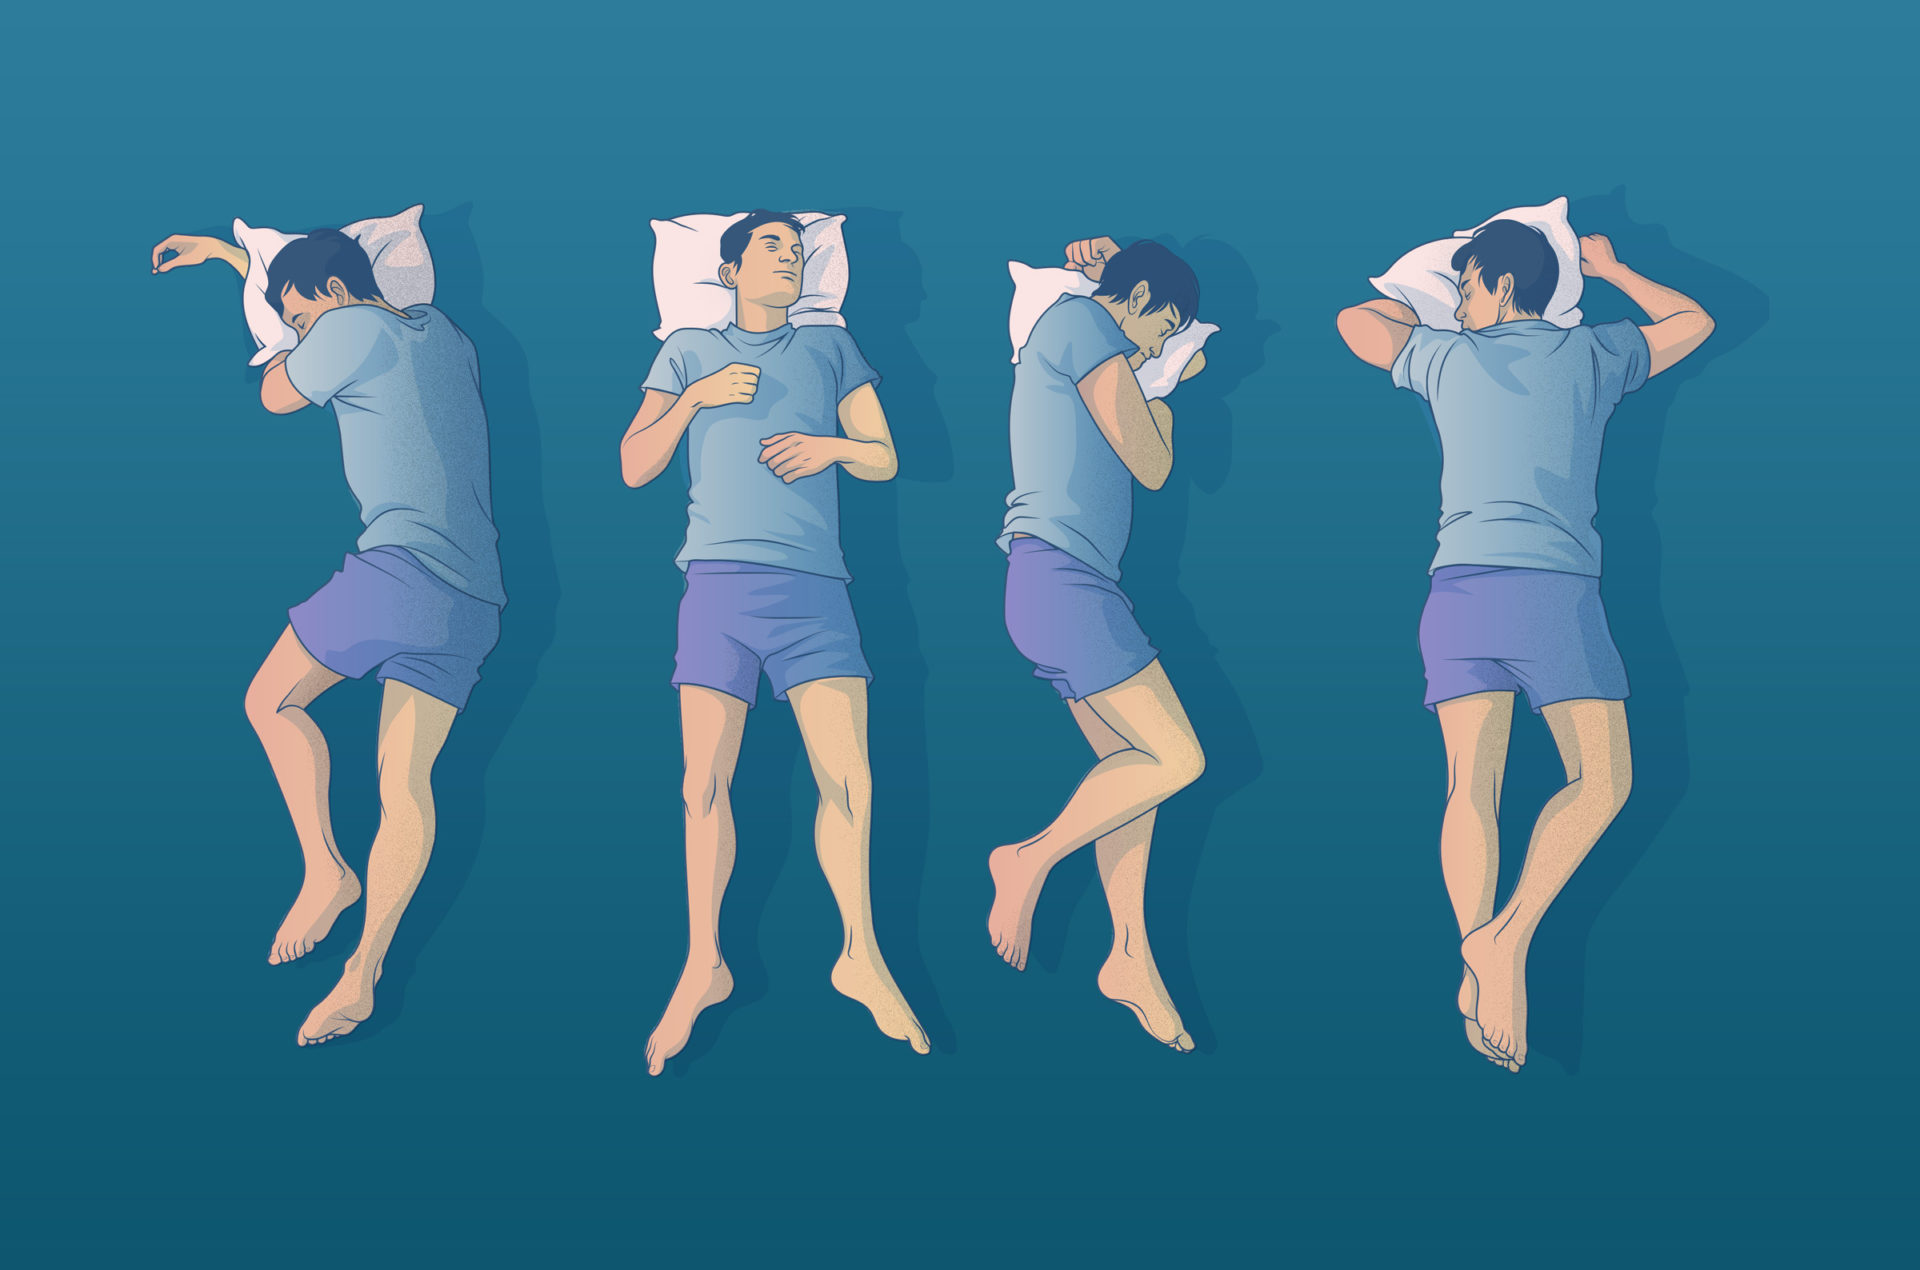 Pozitia in care dormim: avantaje si dezavantaje